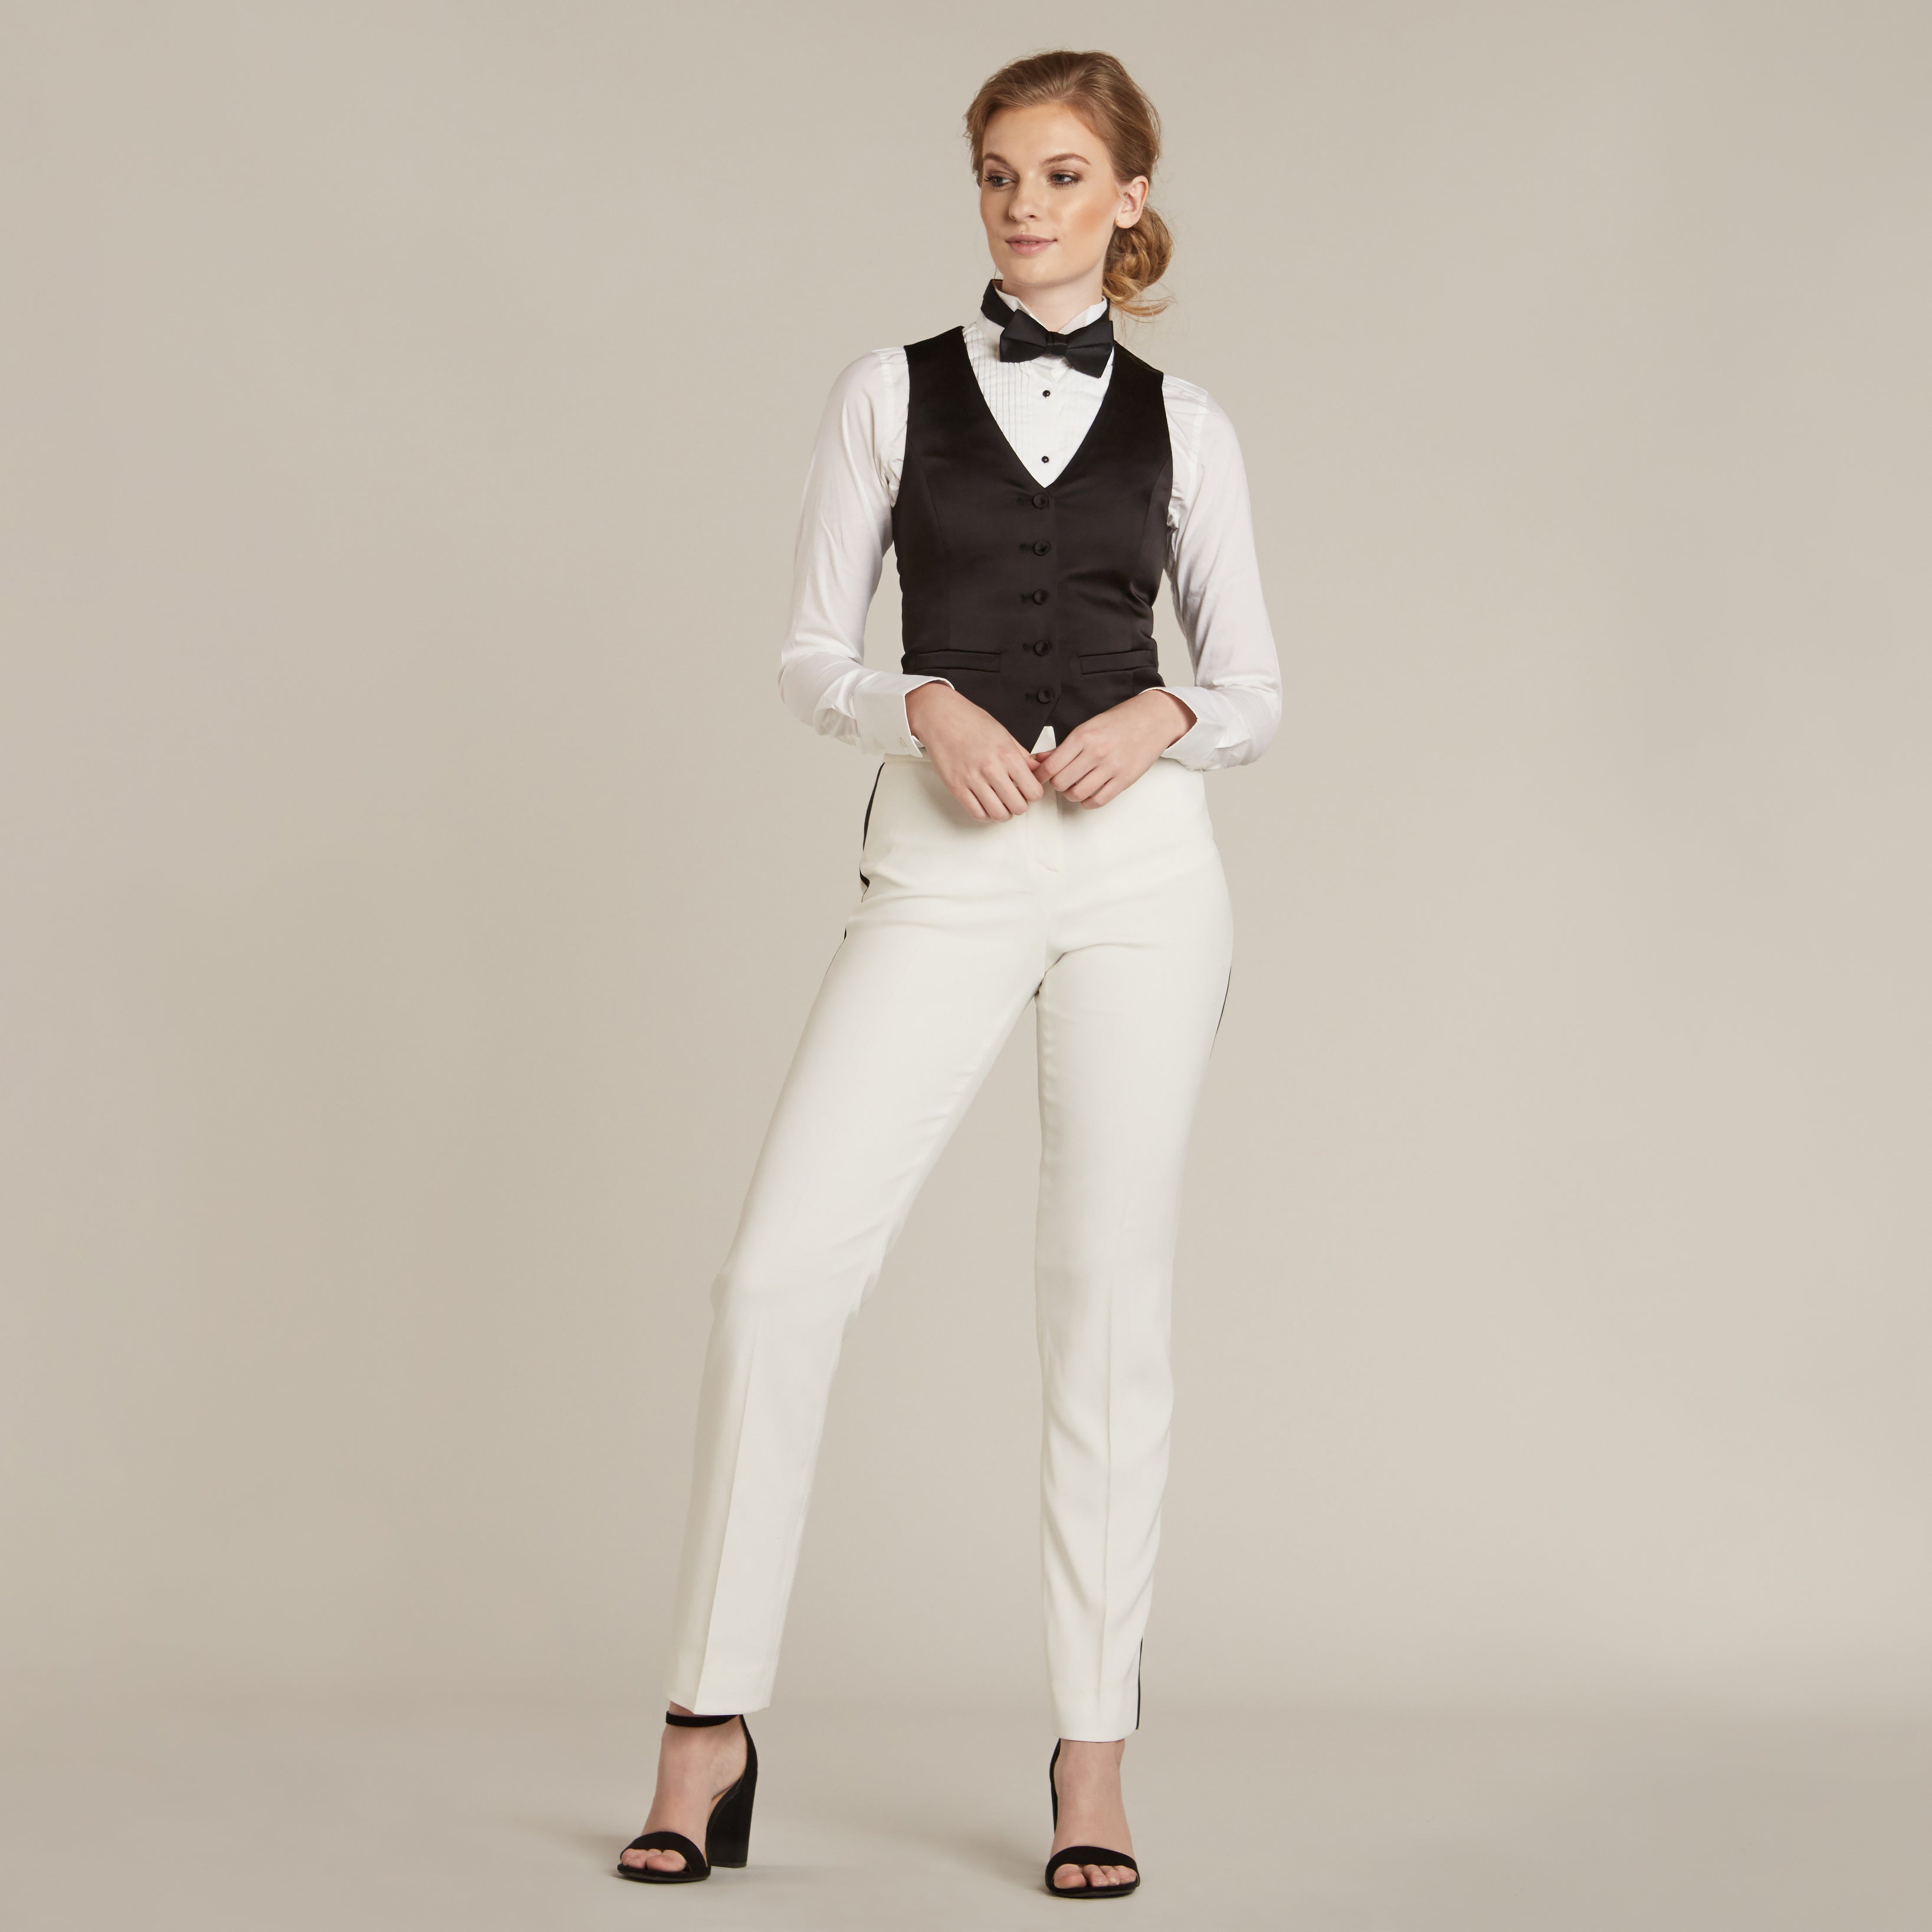 Men's White Black Trim Suits Notch Lapel Blazer & Pants - OneSimpleGown.com